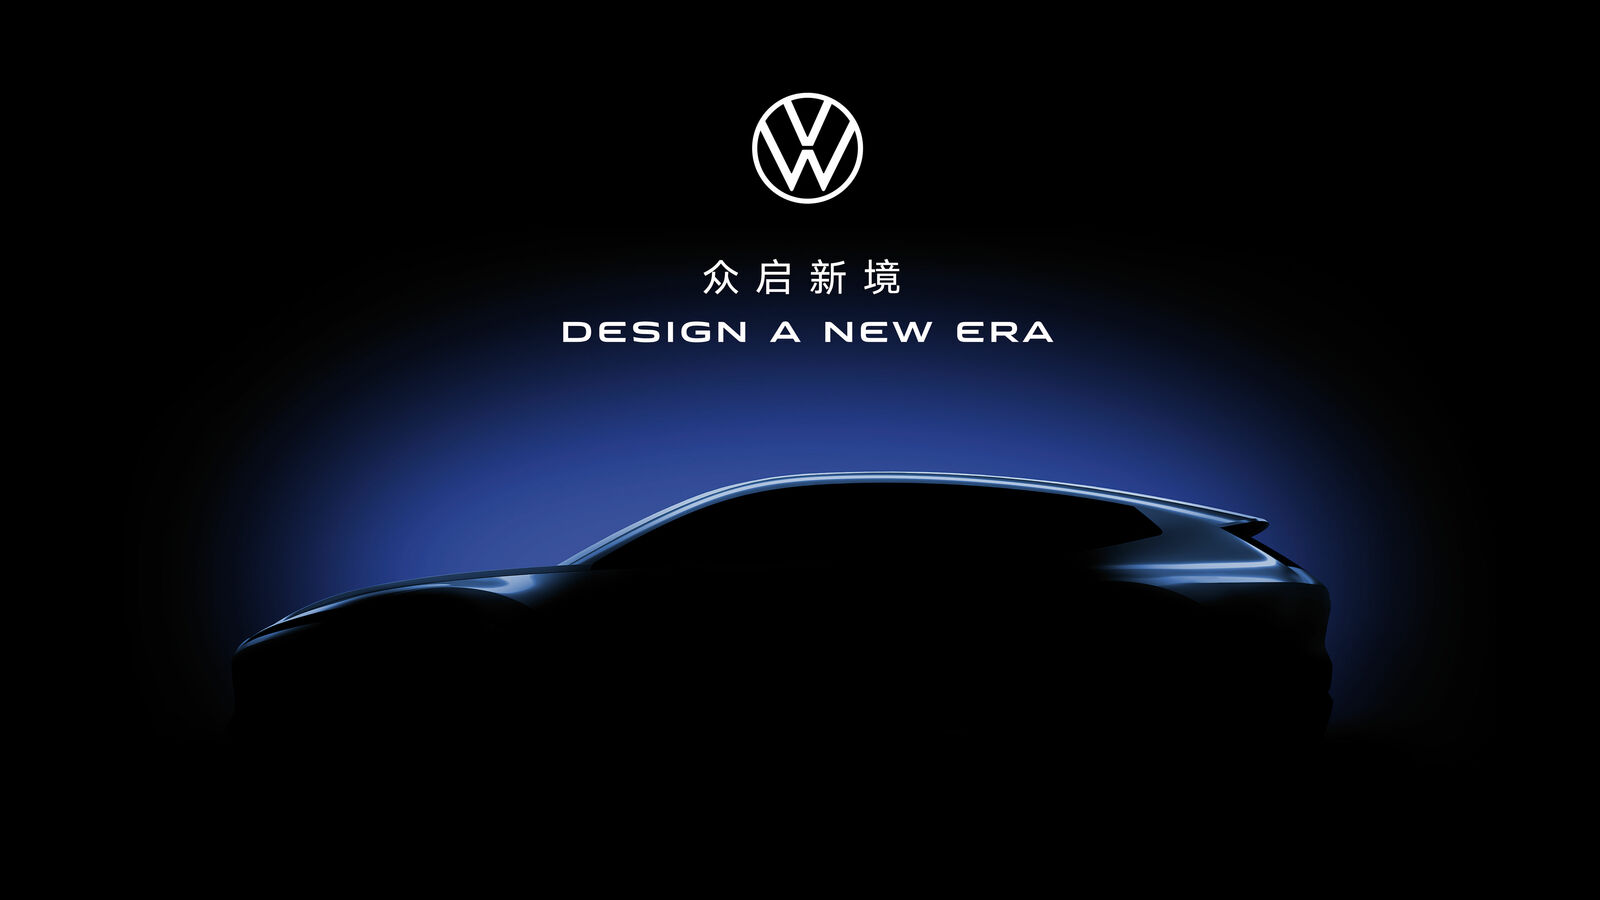 Die Marke Volkswagen wird ein auf chinesische Verbraucher zugeschnittenes Konzeptfahrzeug vorstellen